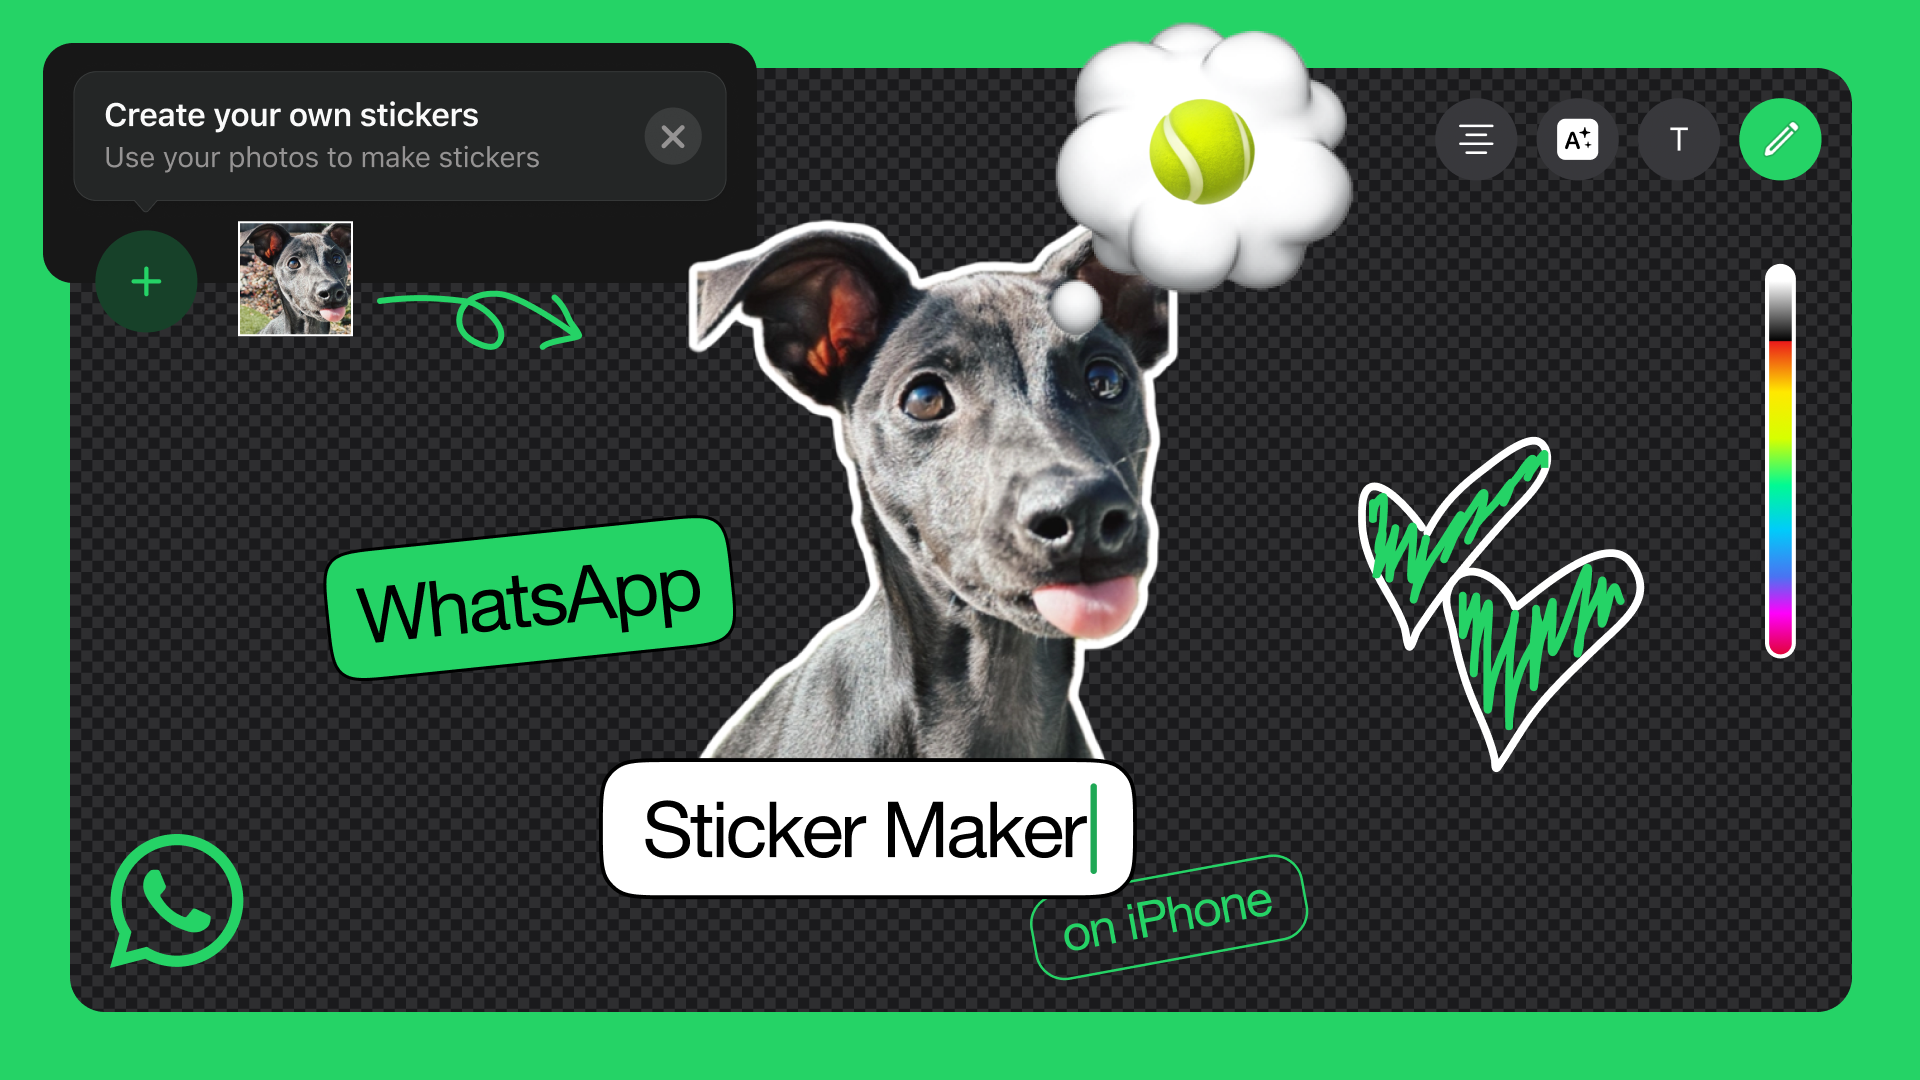 An image of WhatsApp's new sticker maker